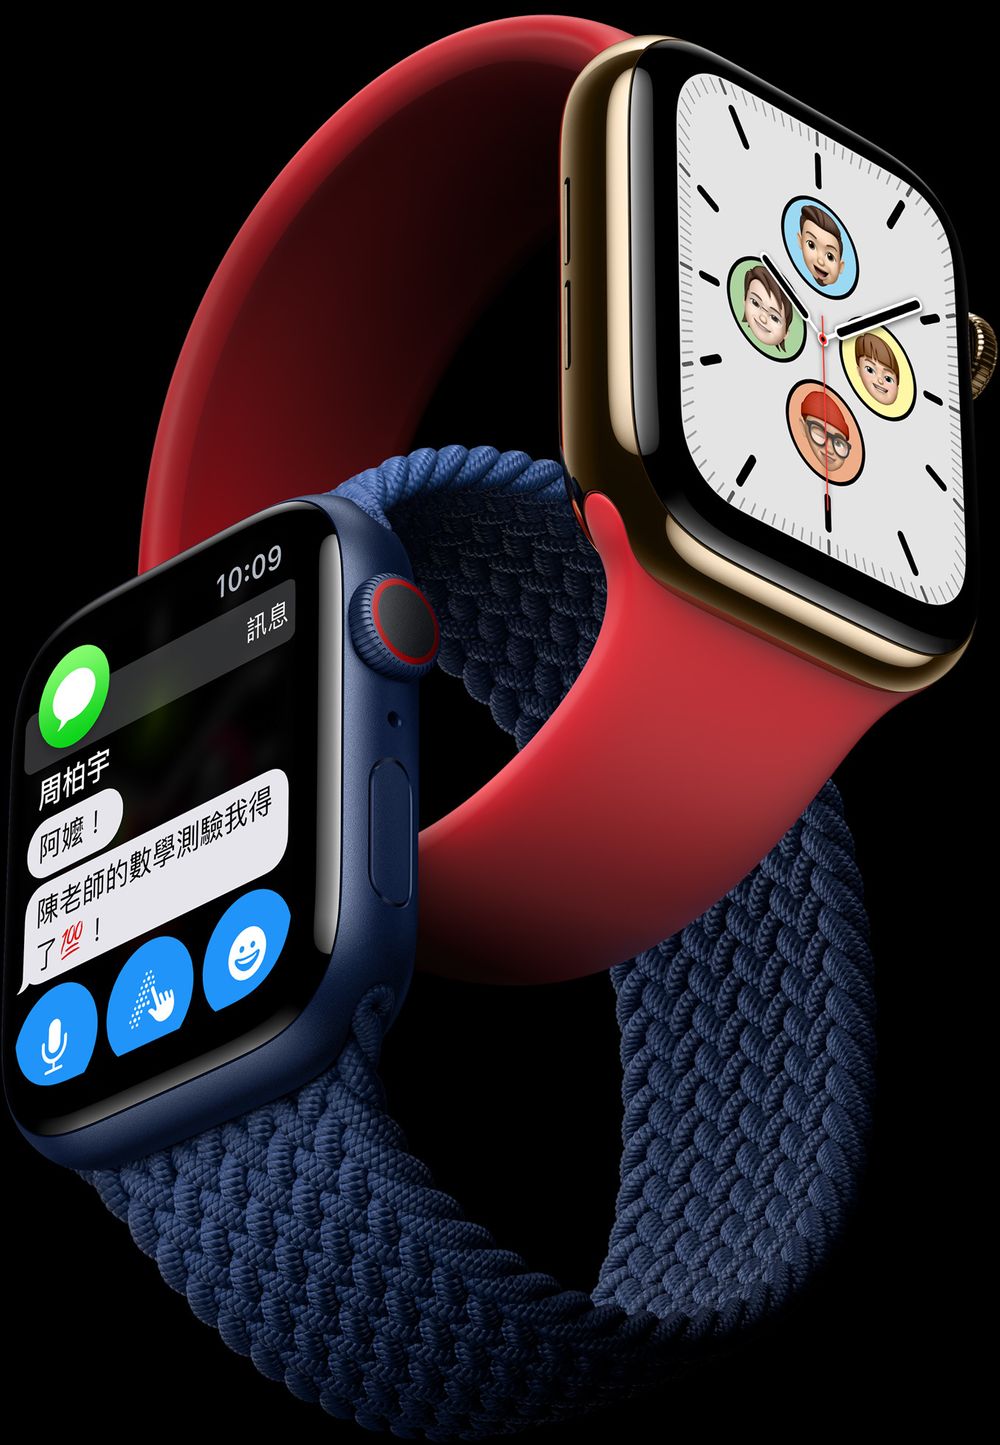 苹果秋季发表会公开Apple Watch Series 6、iPad Air 及Apple One 订阅服务等情报